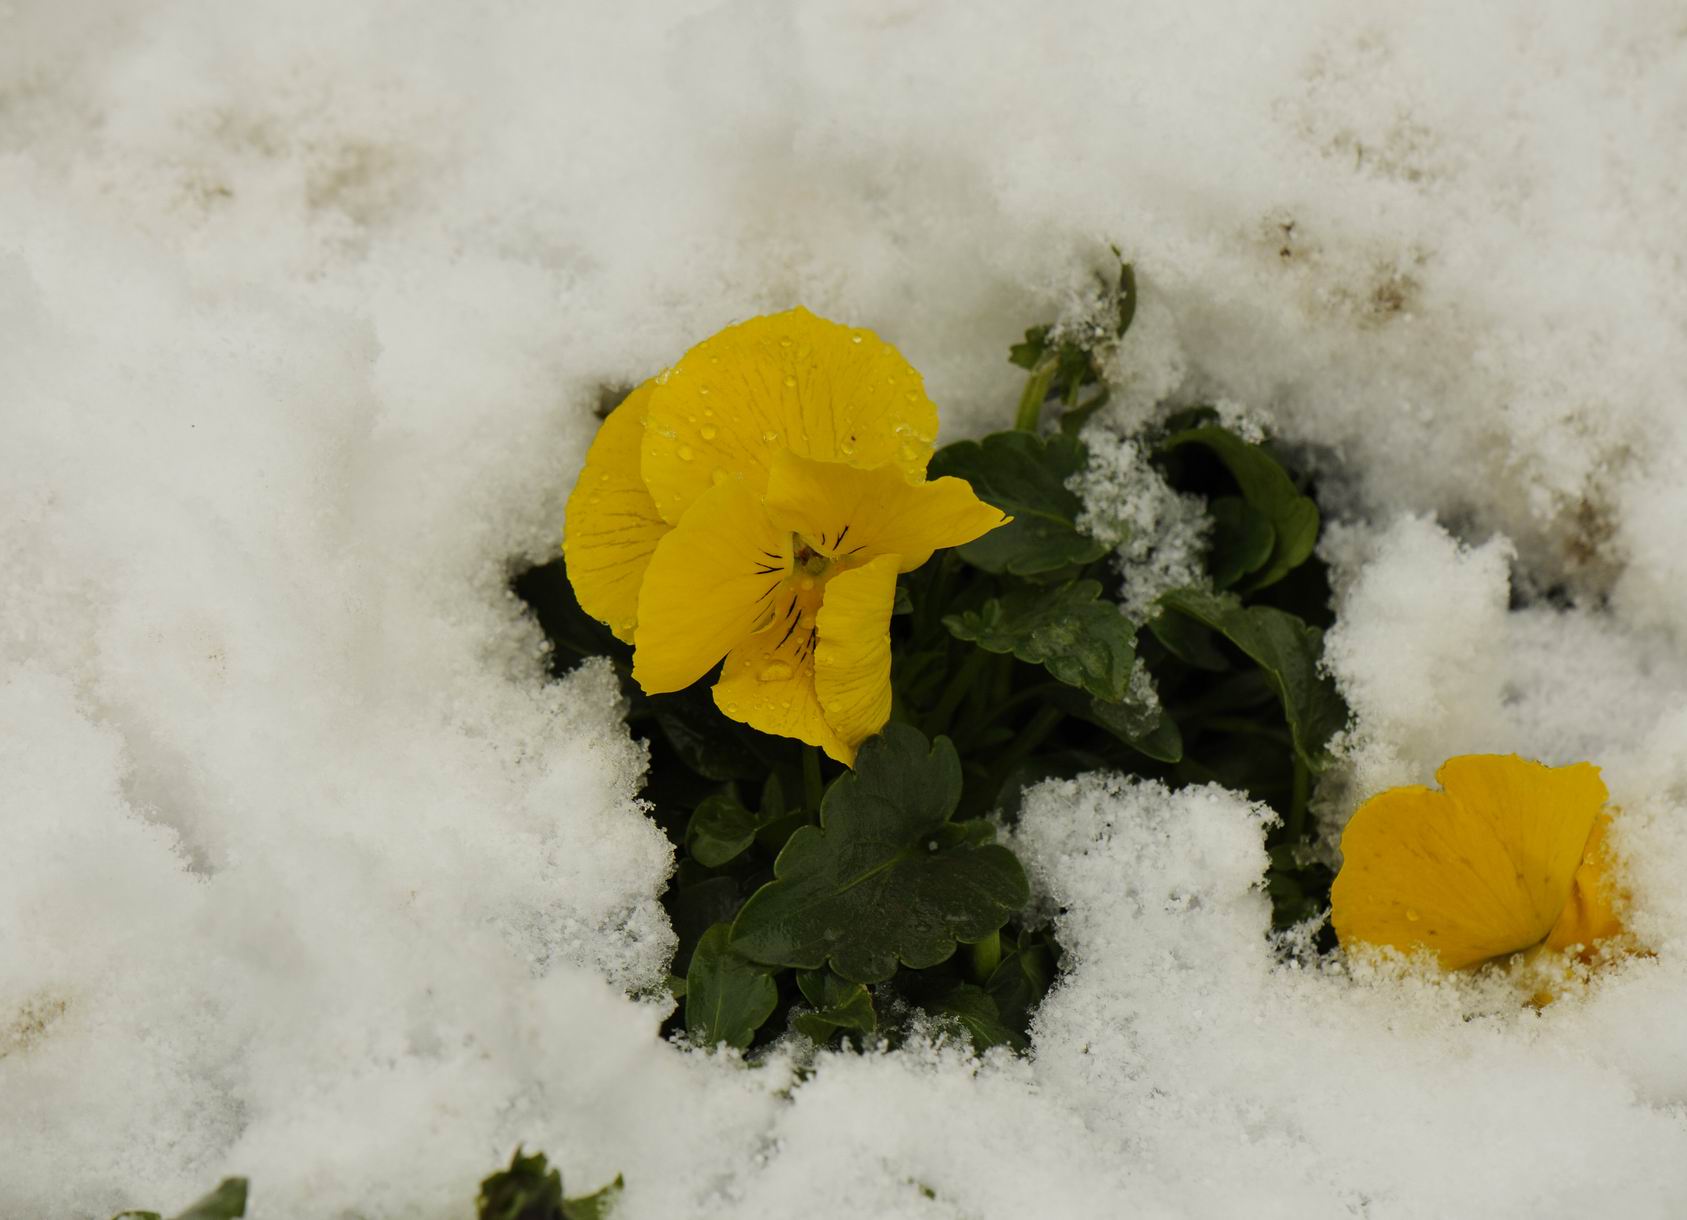 雪中花朵